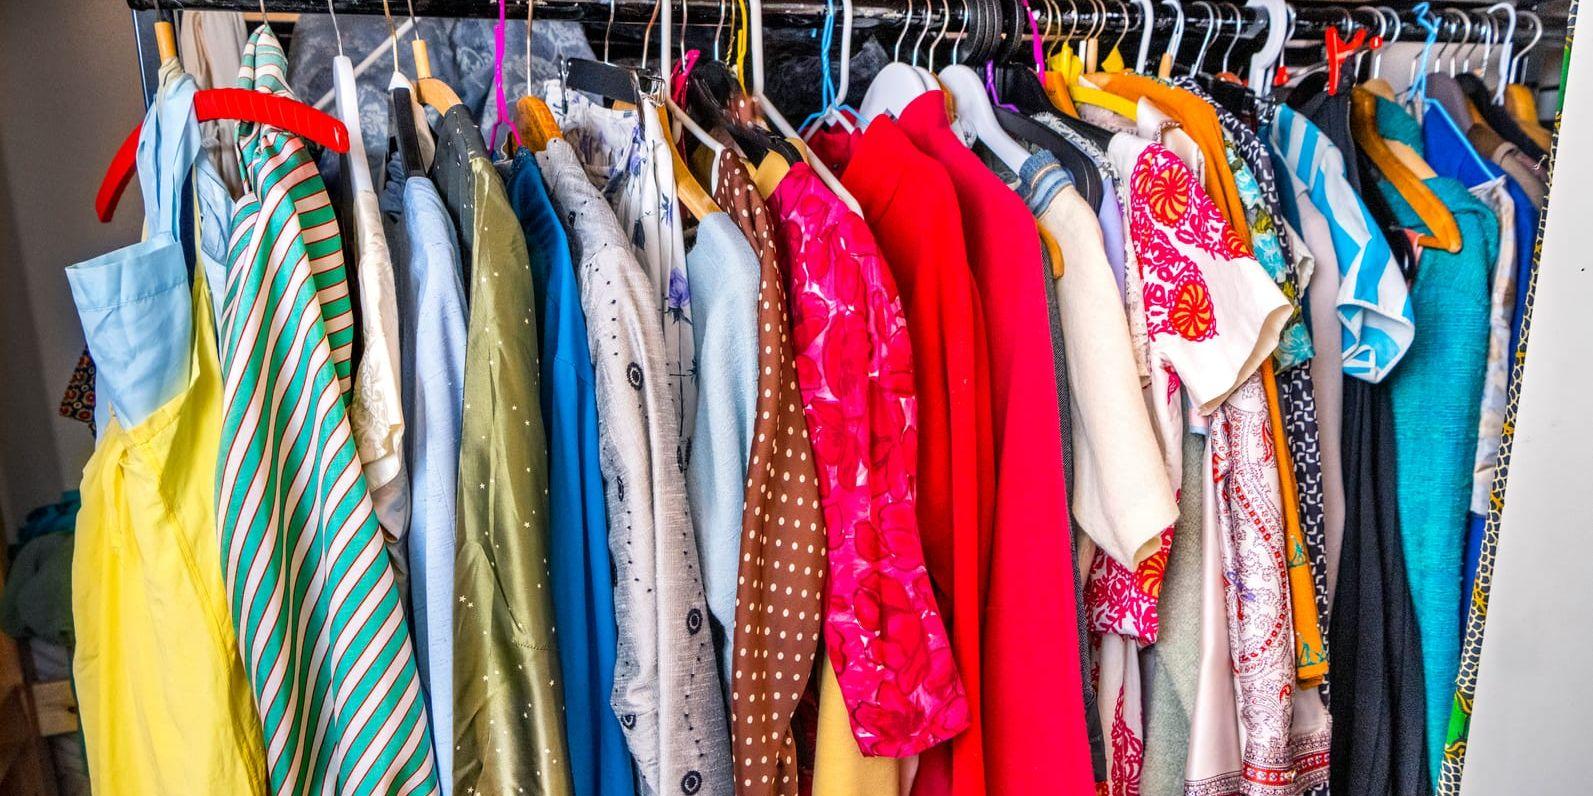 Dags att rensa garderoben? Det finns sätt att återvinna och återanvända textil.